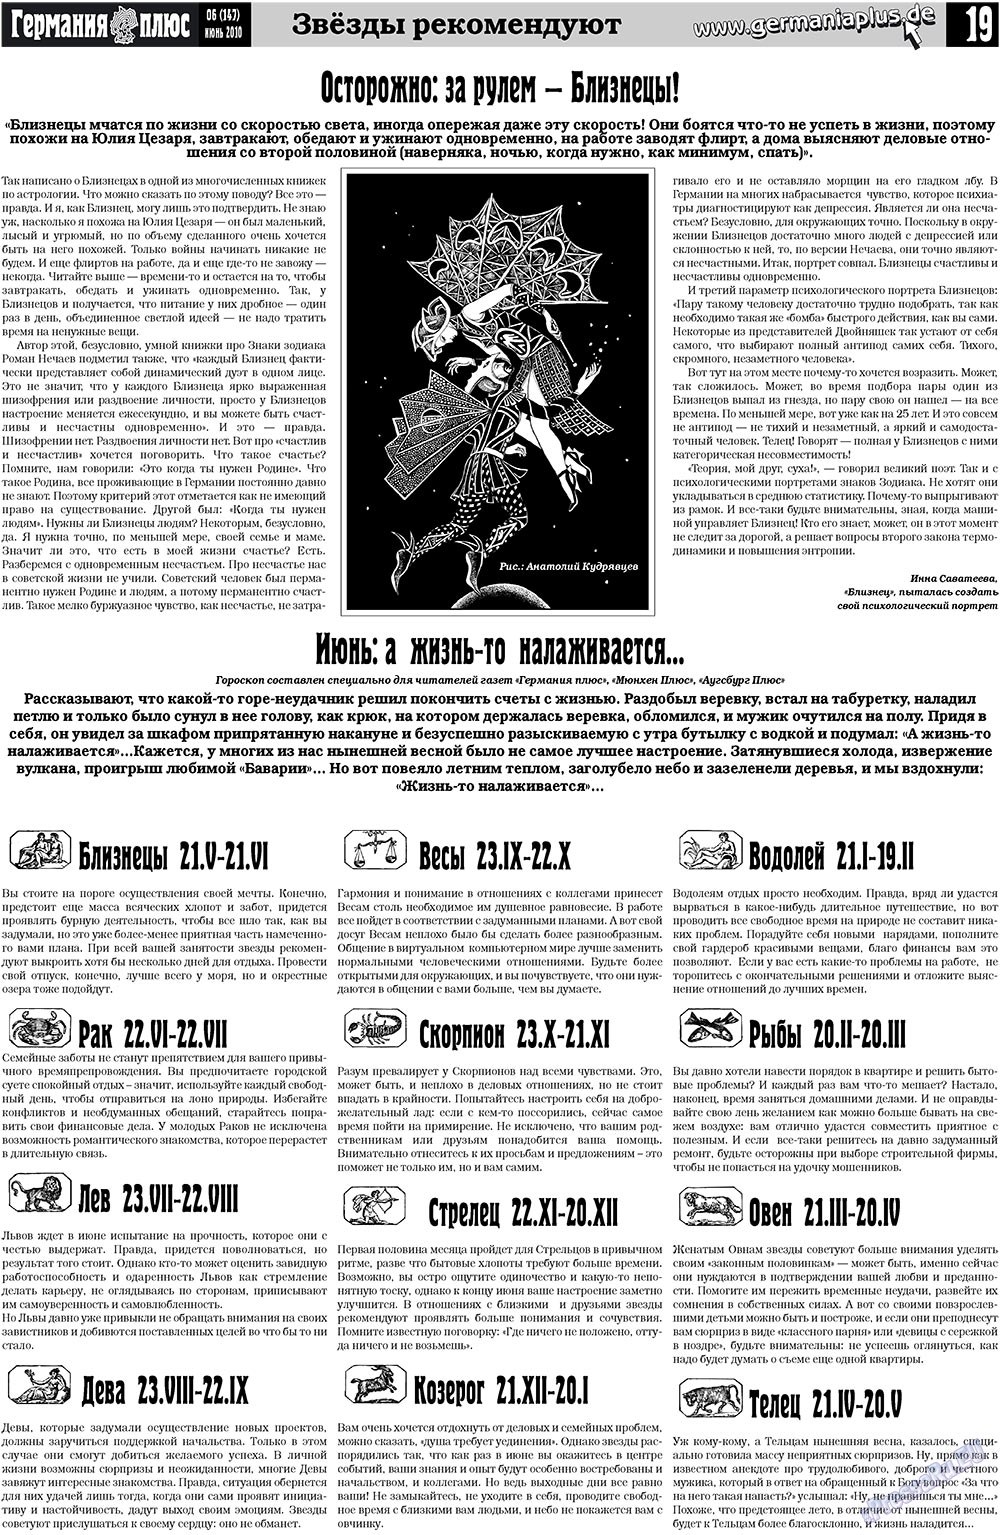 Германия плюс (газета). 2010 год, номер 6, стр. 19